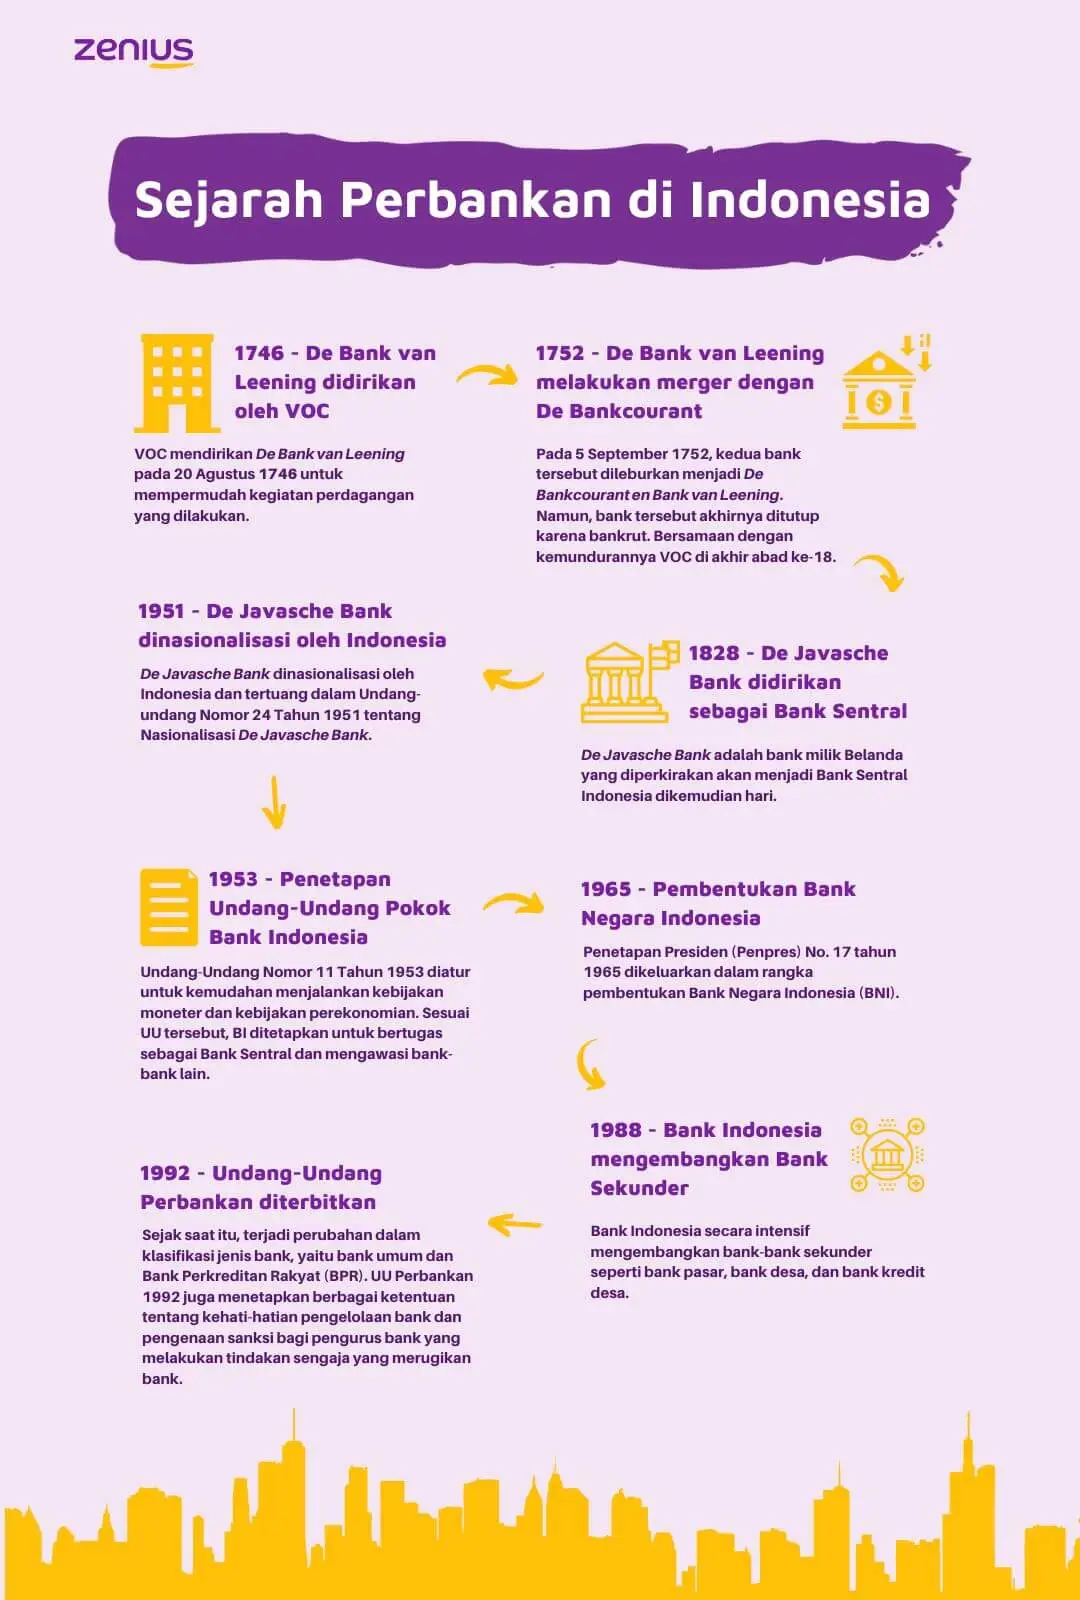 Perkembangan sejarah perbankan di Indonesia berdasarkan timelinenya.